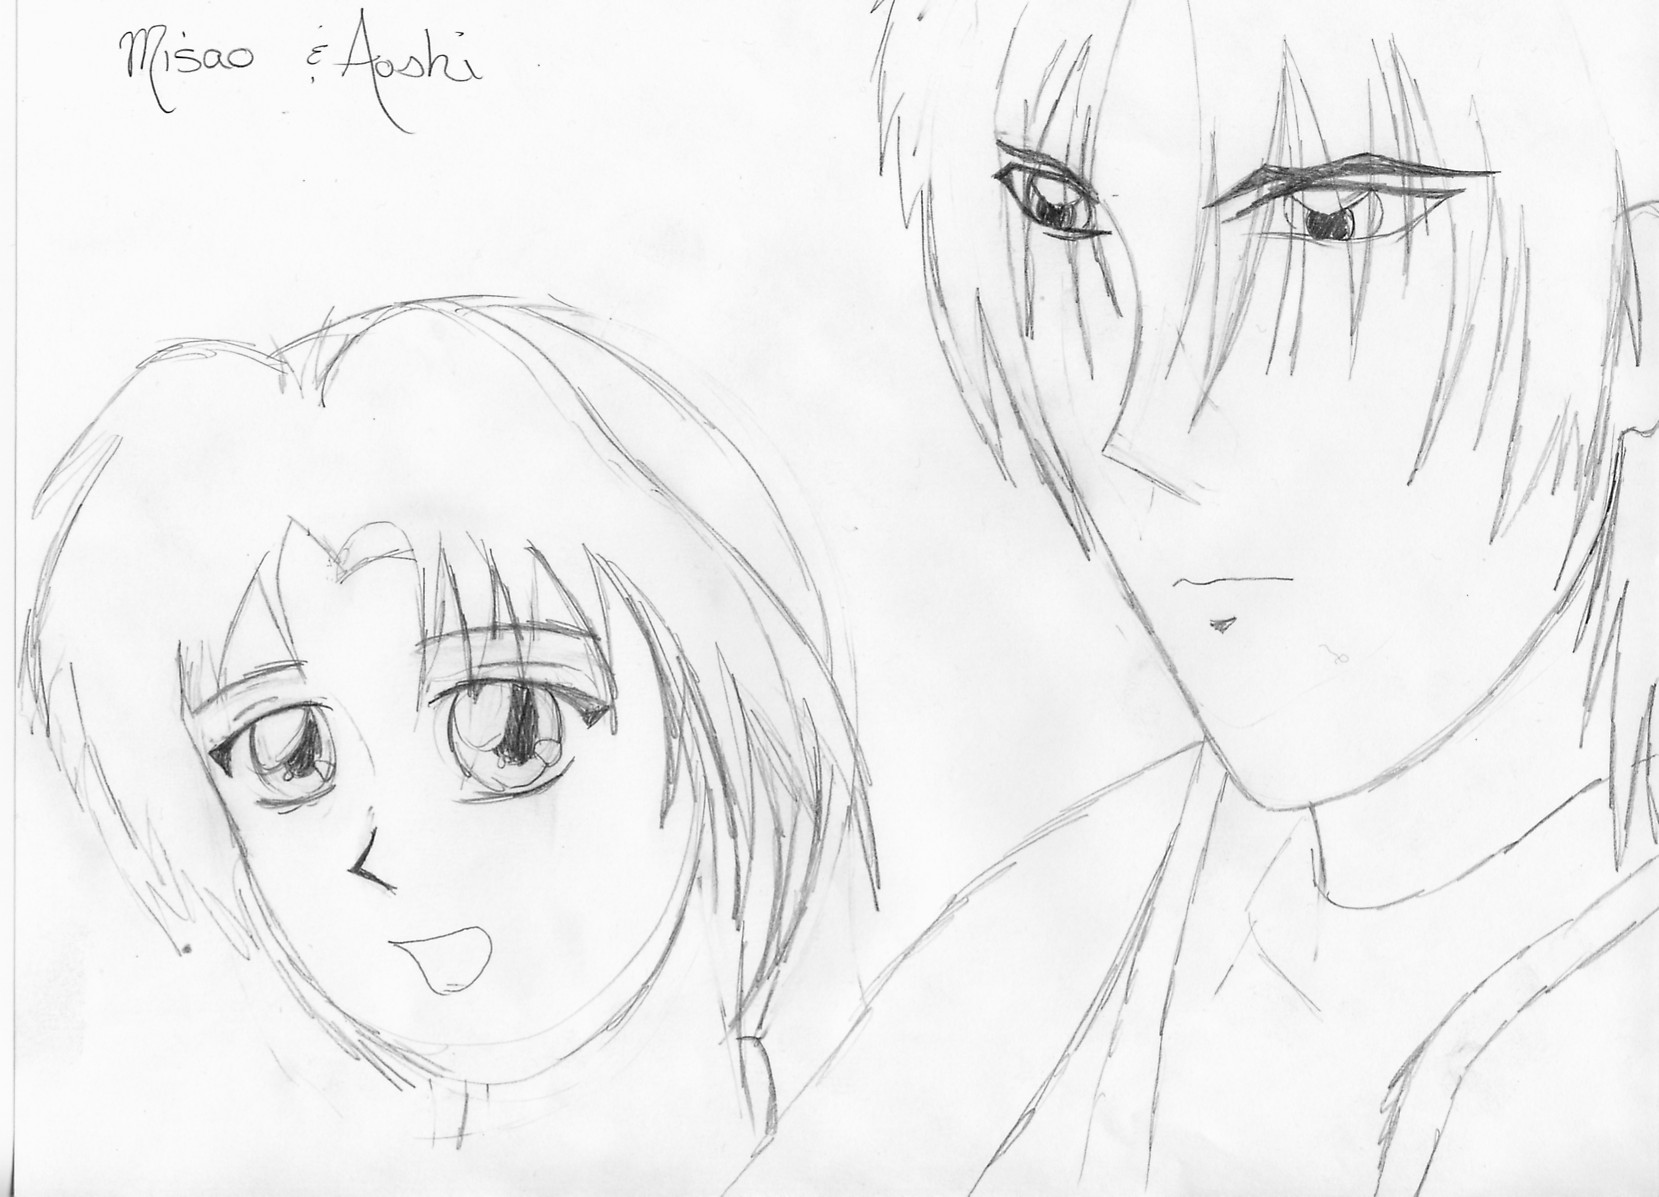 Misao and Aoshi by Sanokura